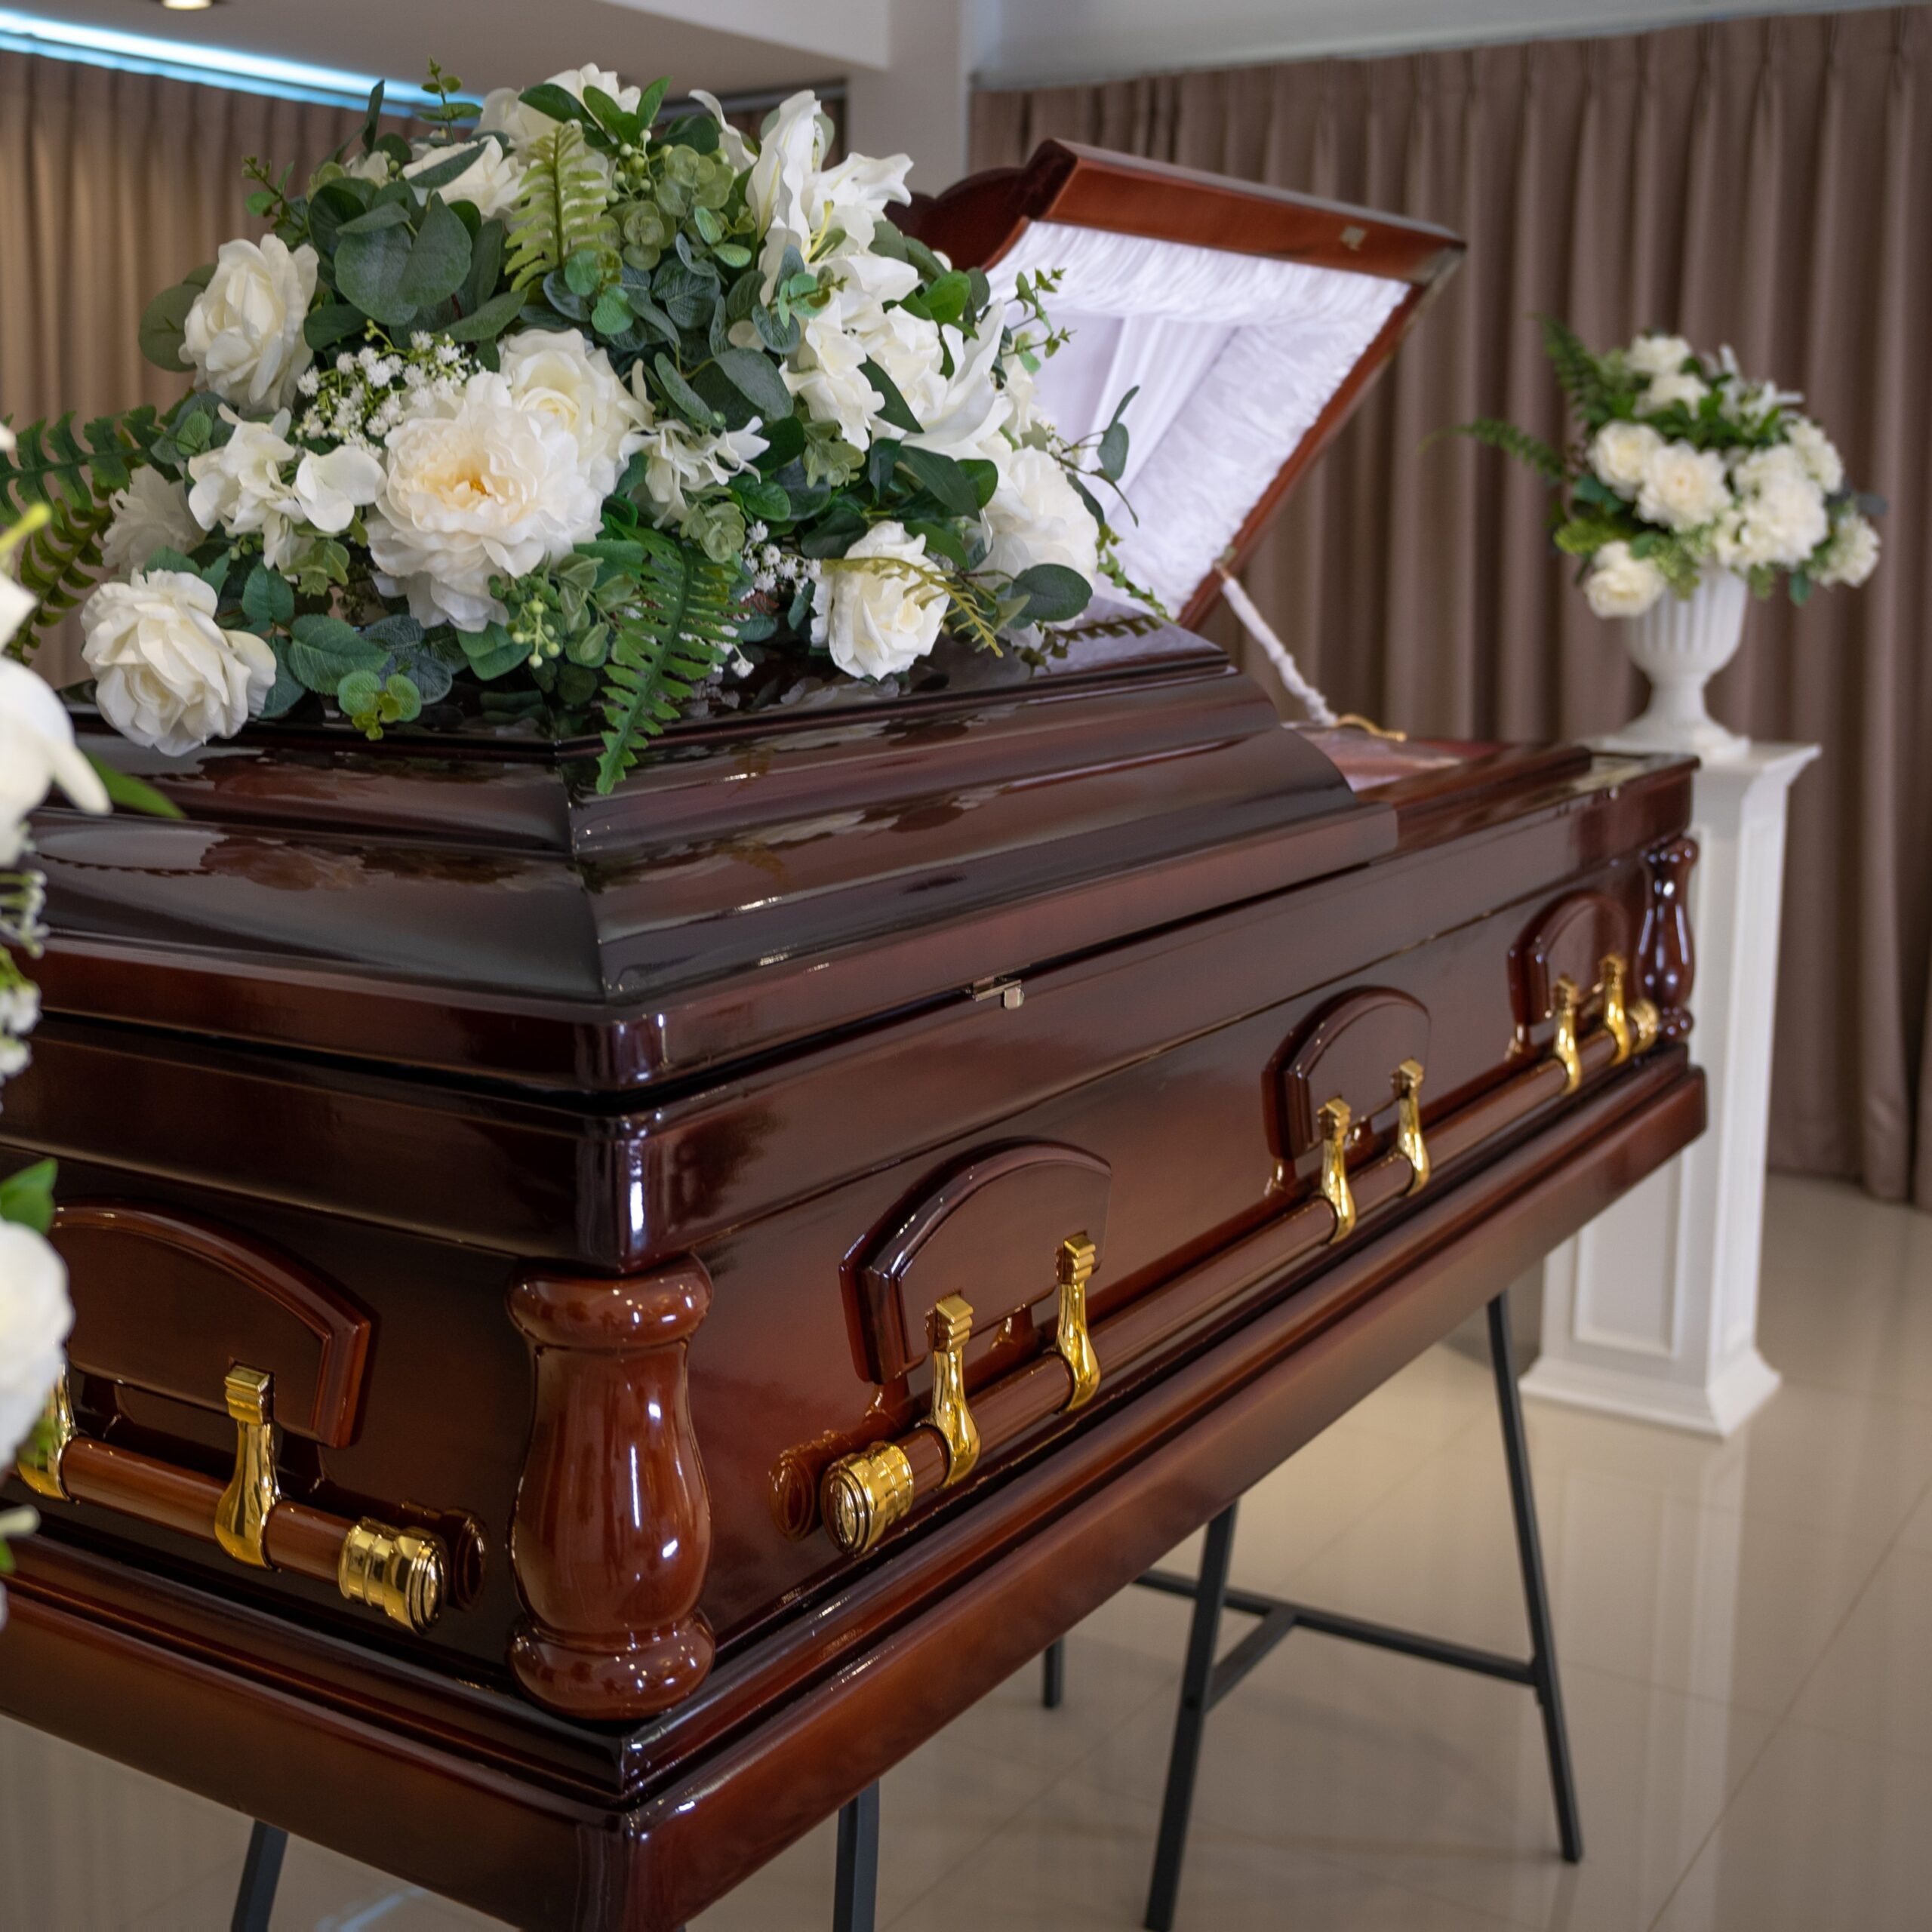 Funeral arrangement